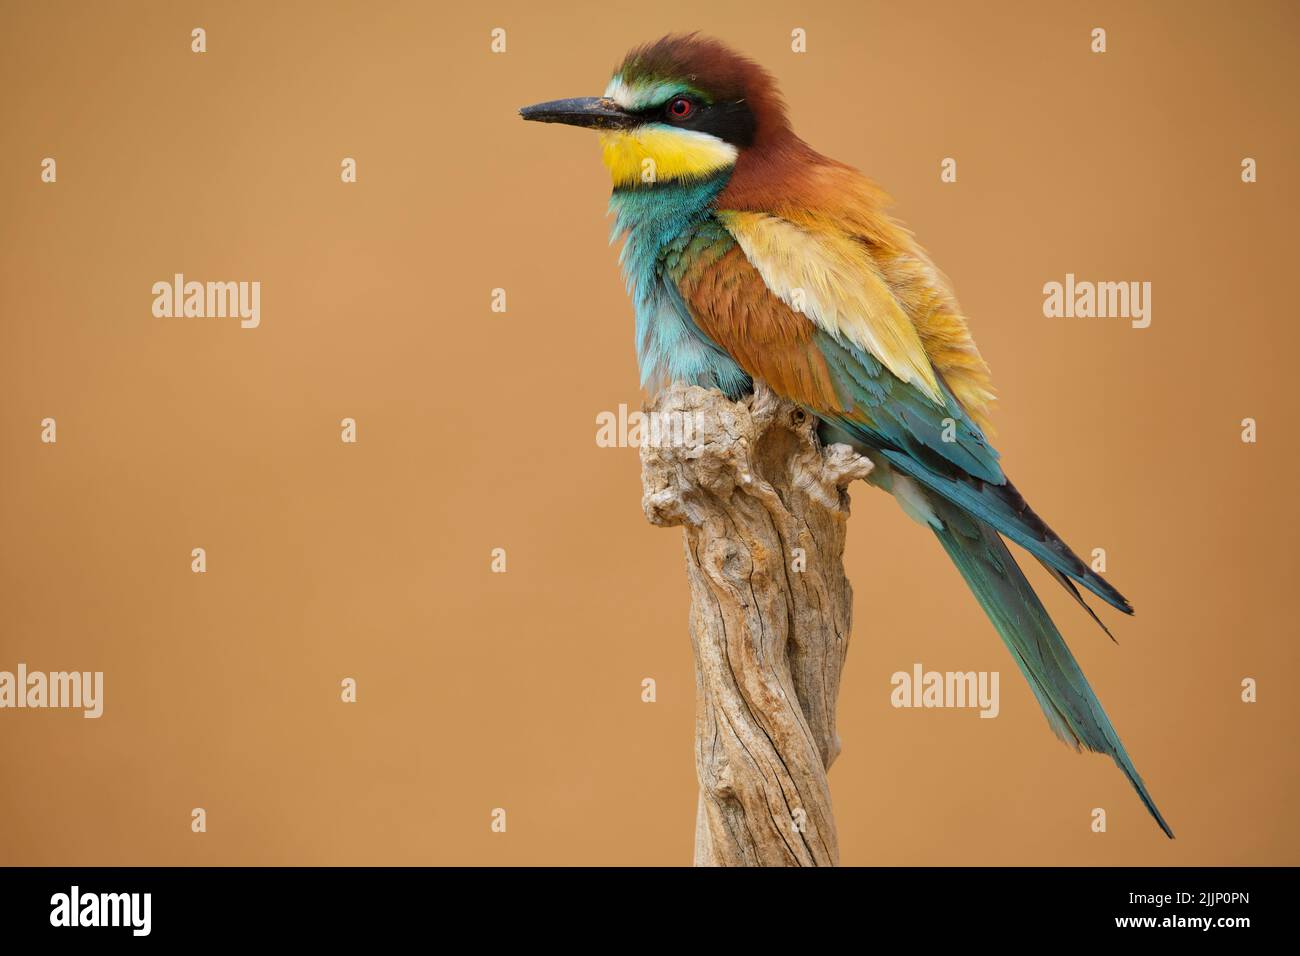 Bright merops uccello apiaster con piumaggio colorato seduta in cima a legno storto su sfondo sfocato della campagna Foto Stock